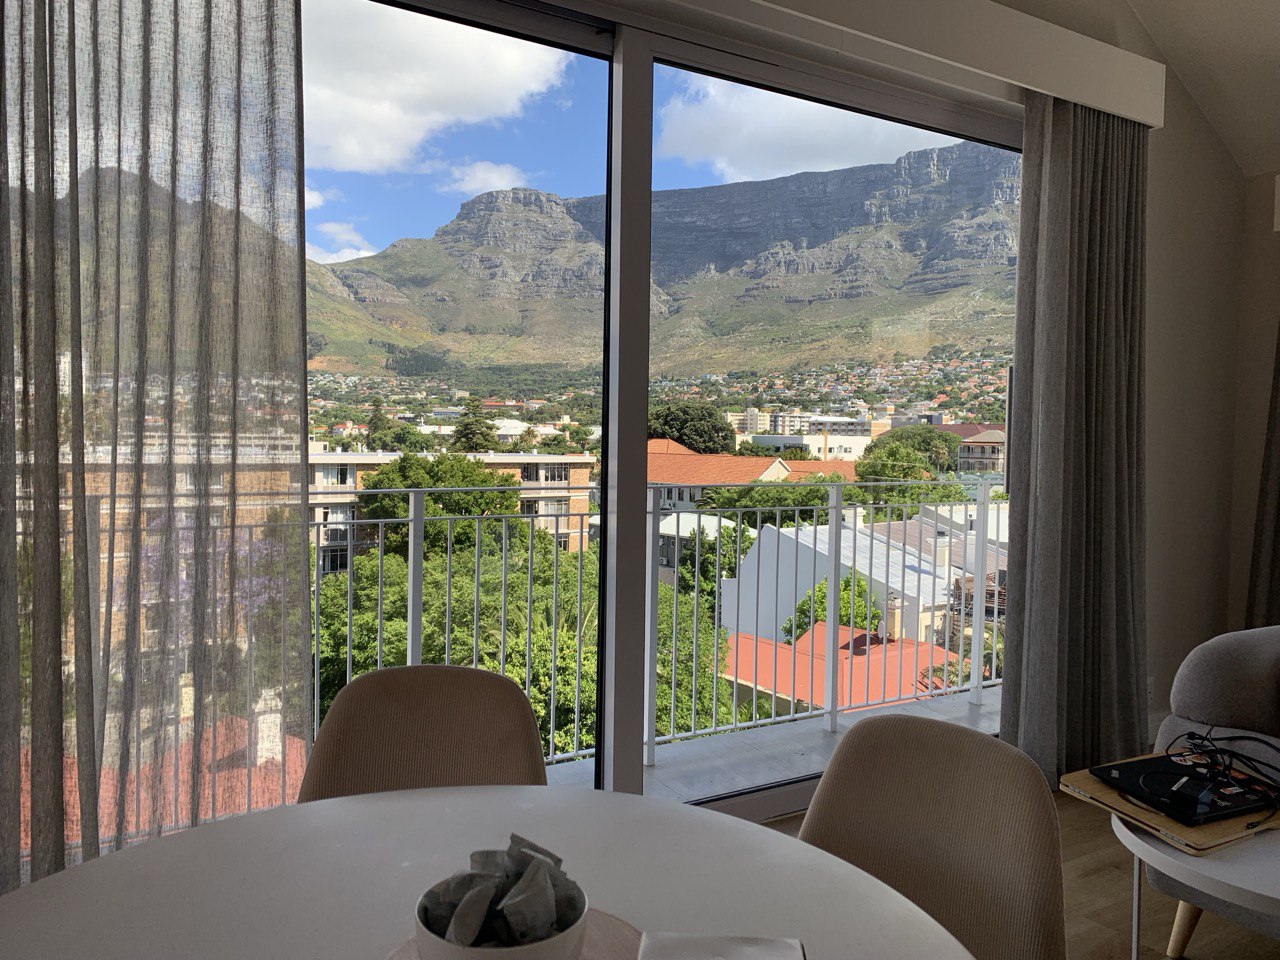 Вид из окна на Столовую гору в Кейптауне, квартира расположена в районе Gardens. Вживую виды потрясают!